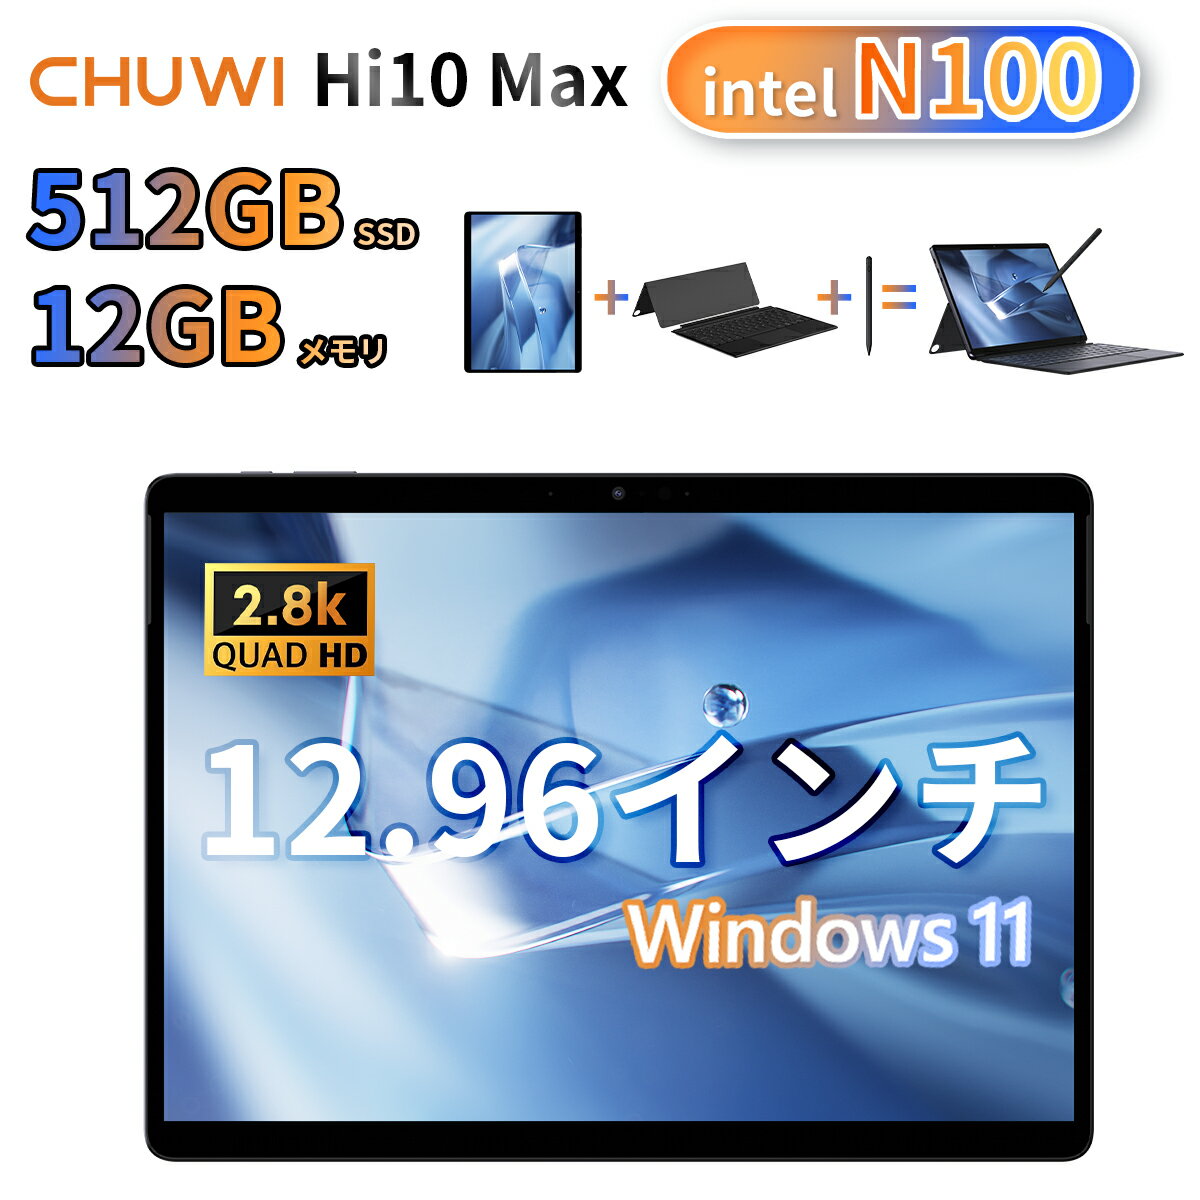 【予約販売中】CHUWI 2024年6月発売 intel n100 2in1タブレット windows11 タブレットpc 512GB PCIE SSD / 12GB DDDR5 メモリ 12.95インチ 液晶ディスプレイ 2.8K 解像度 3:2ディスプレイ CHUWI Hi10 max WIFIモデル WIFI6 キーボード付き セット販売 新生活応援